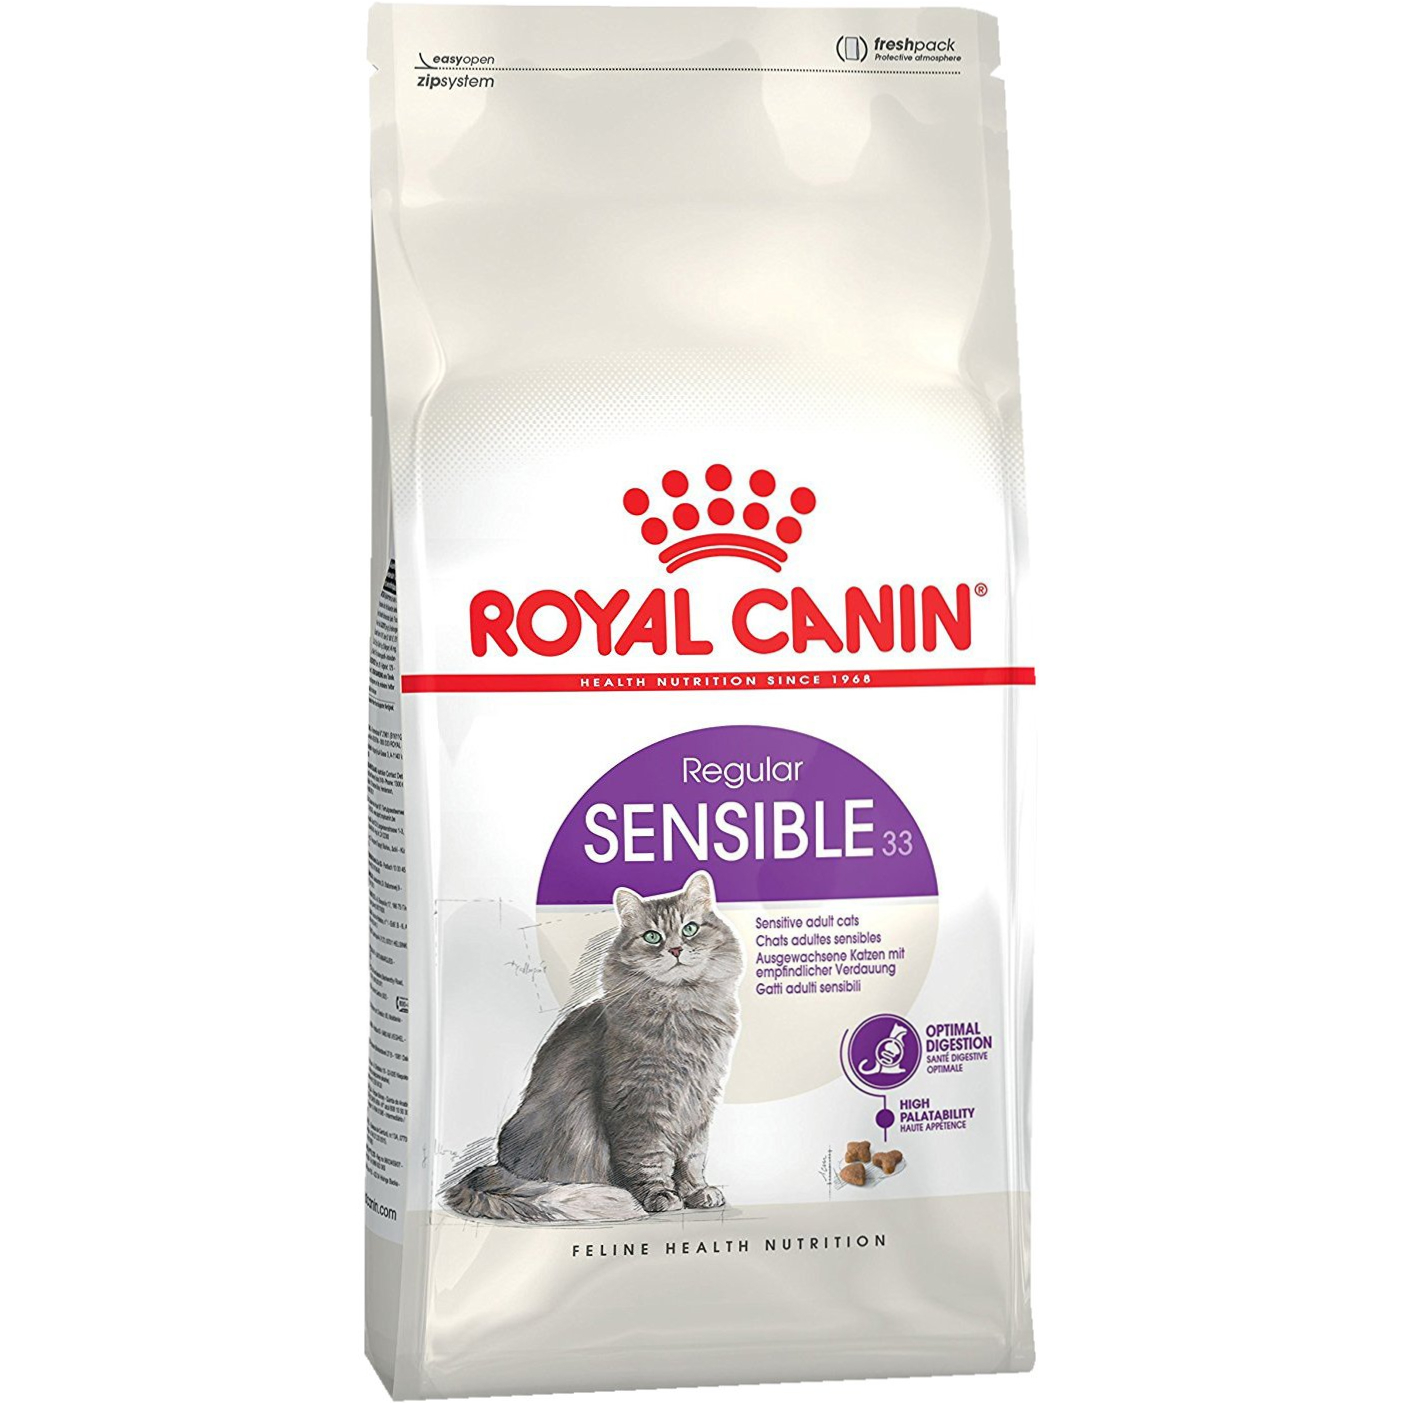 Корм для кошек Royal Canin Sensible 33 с чувствительным пищеварением 1,2 кг корм для кошек royal canin sensible 33 с чувствительной пищеварительной системой сух 4кг